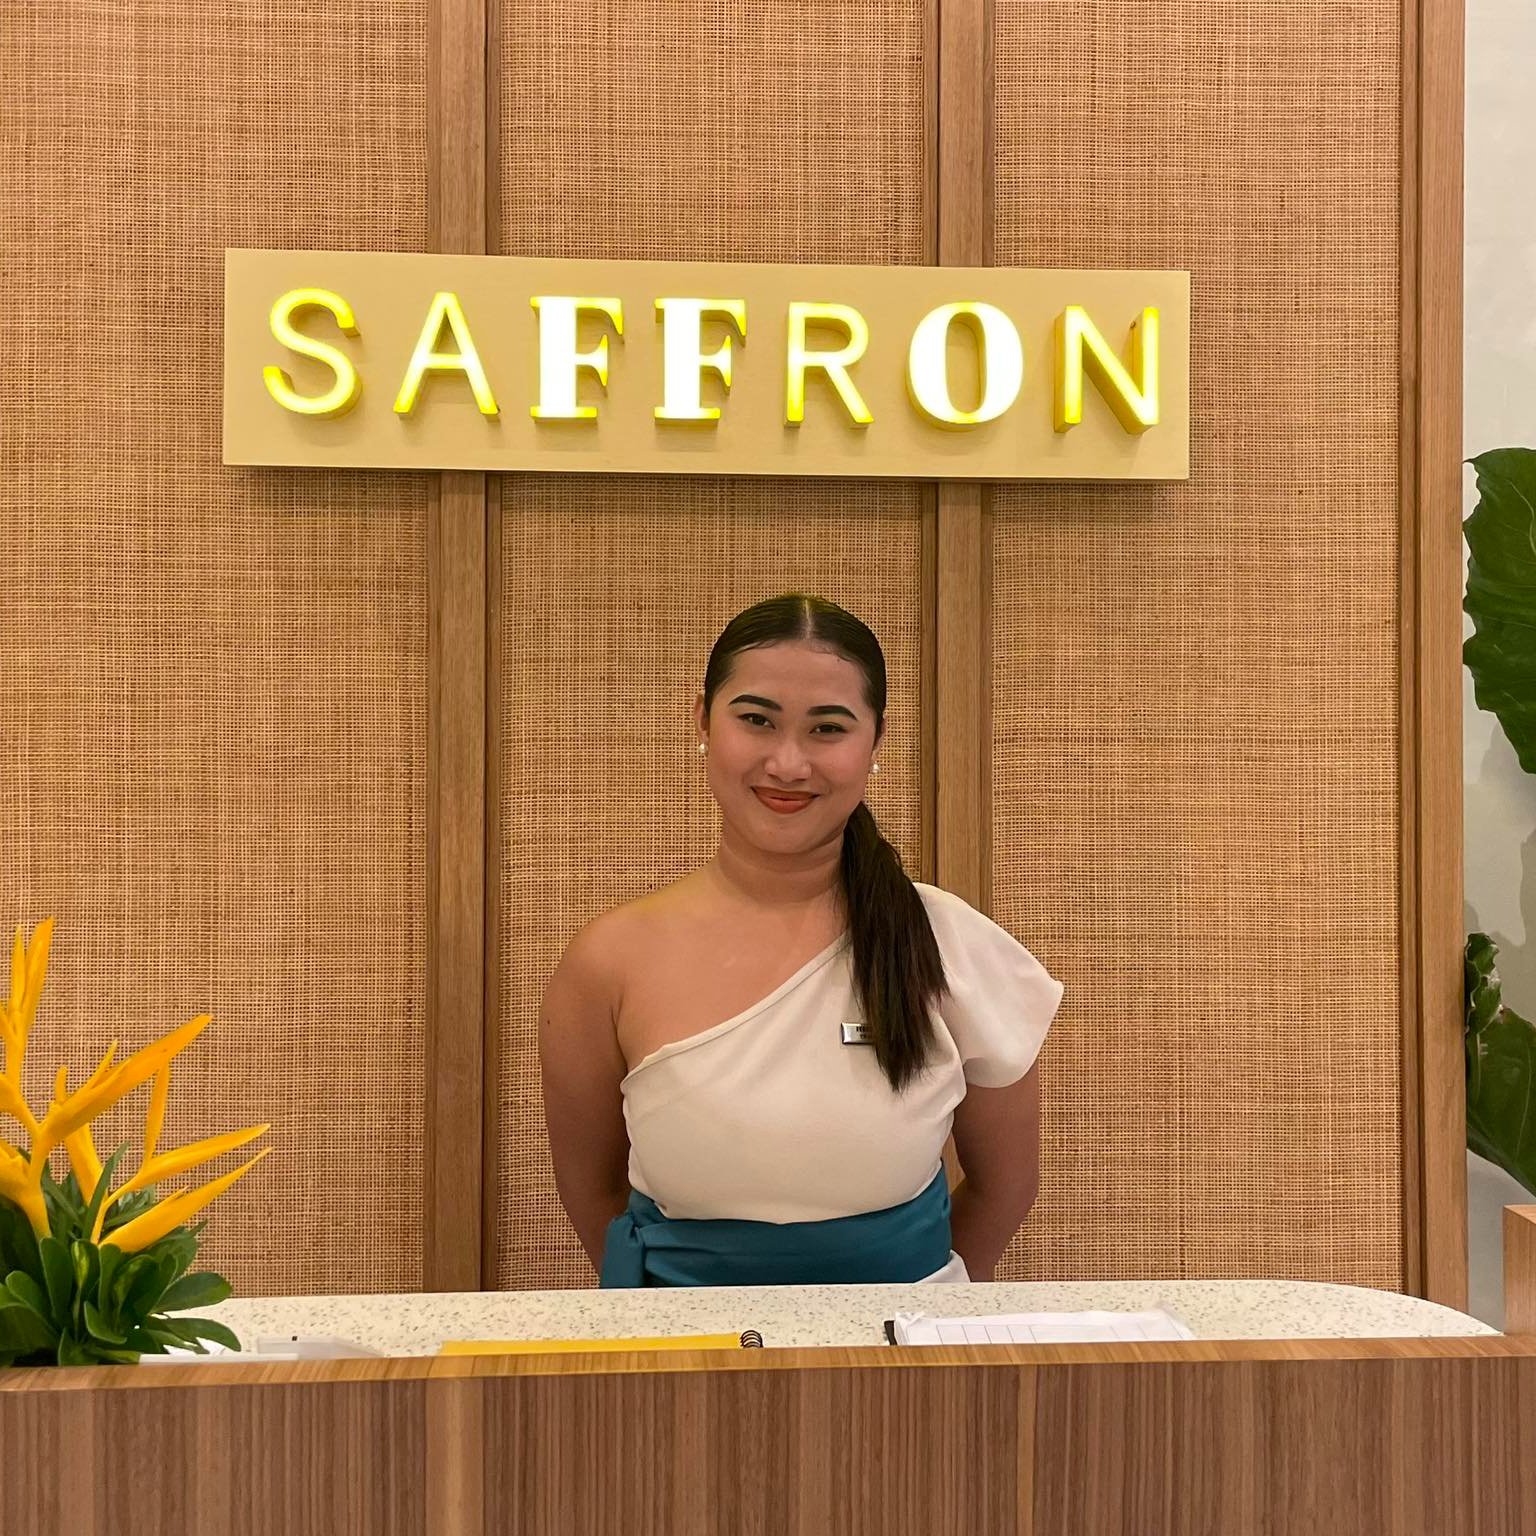 Saffron Cafe - A Feast for the Senses 